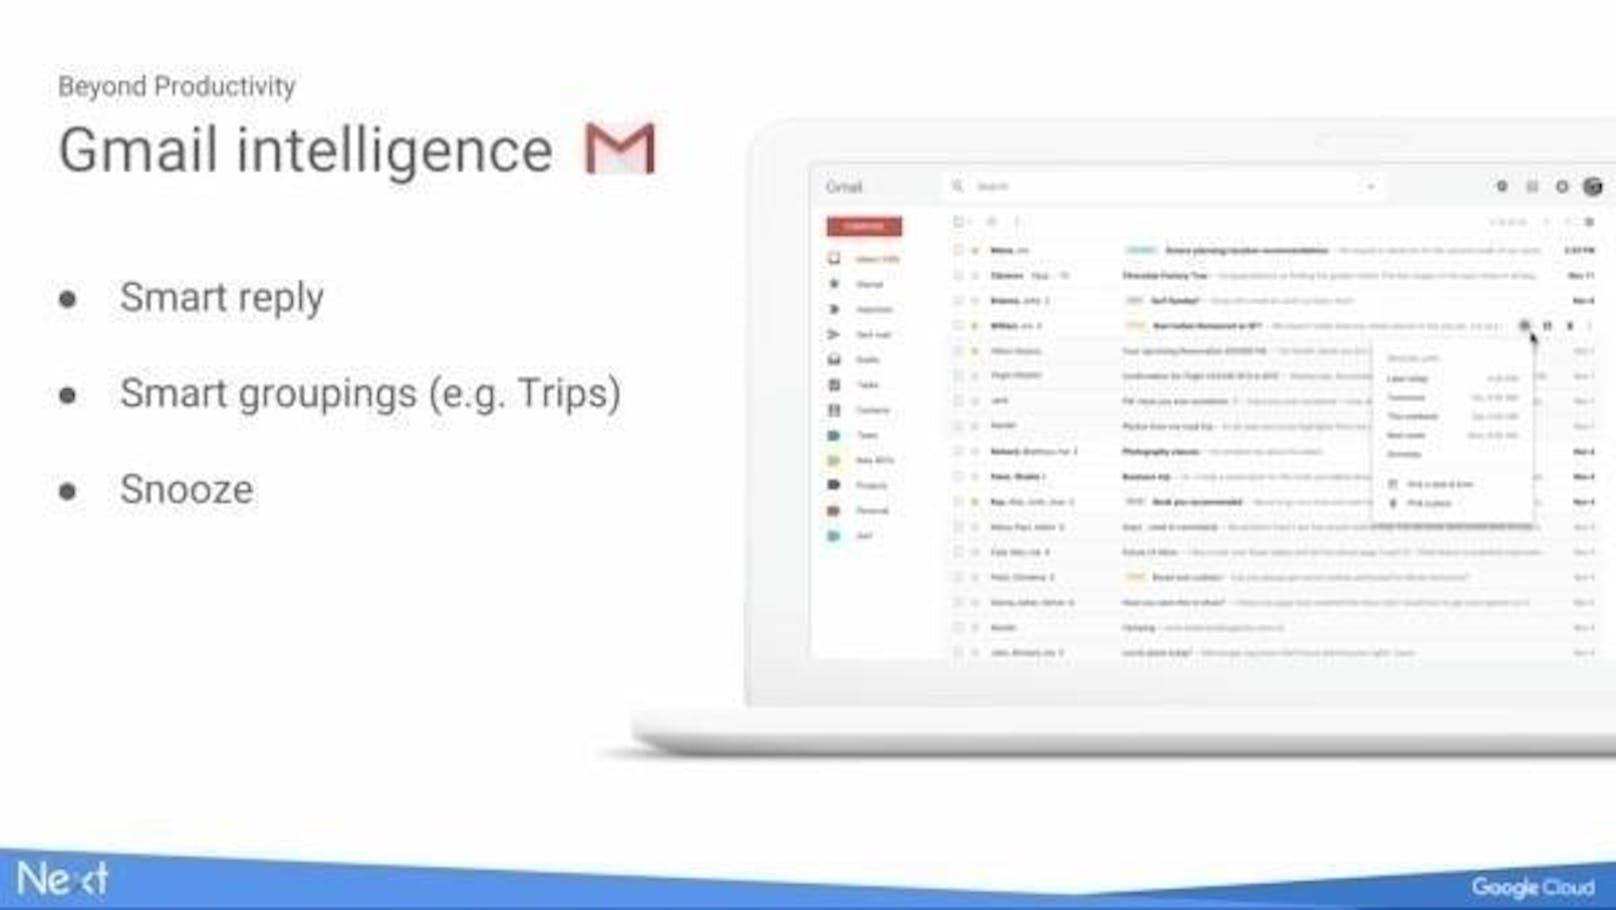 Google hat ein Update für Gmail angekündigt. Mit der Aktualisierung soll der Mail-Dienst in einem frischeren und aufgeräumteren Design daherkommen. Auch sollen G-Suite-Apps, zum Beispiel der Kalender, besser integriert werden. Für Mails soll es außerdem eine Schlummertaste geben, um sie temporär aus der Inbox verschwinden zu lassen. Wann das neue Design und die neuen Funktionen ausgerollt werden, ist bisher nicht bekannt.